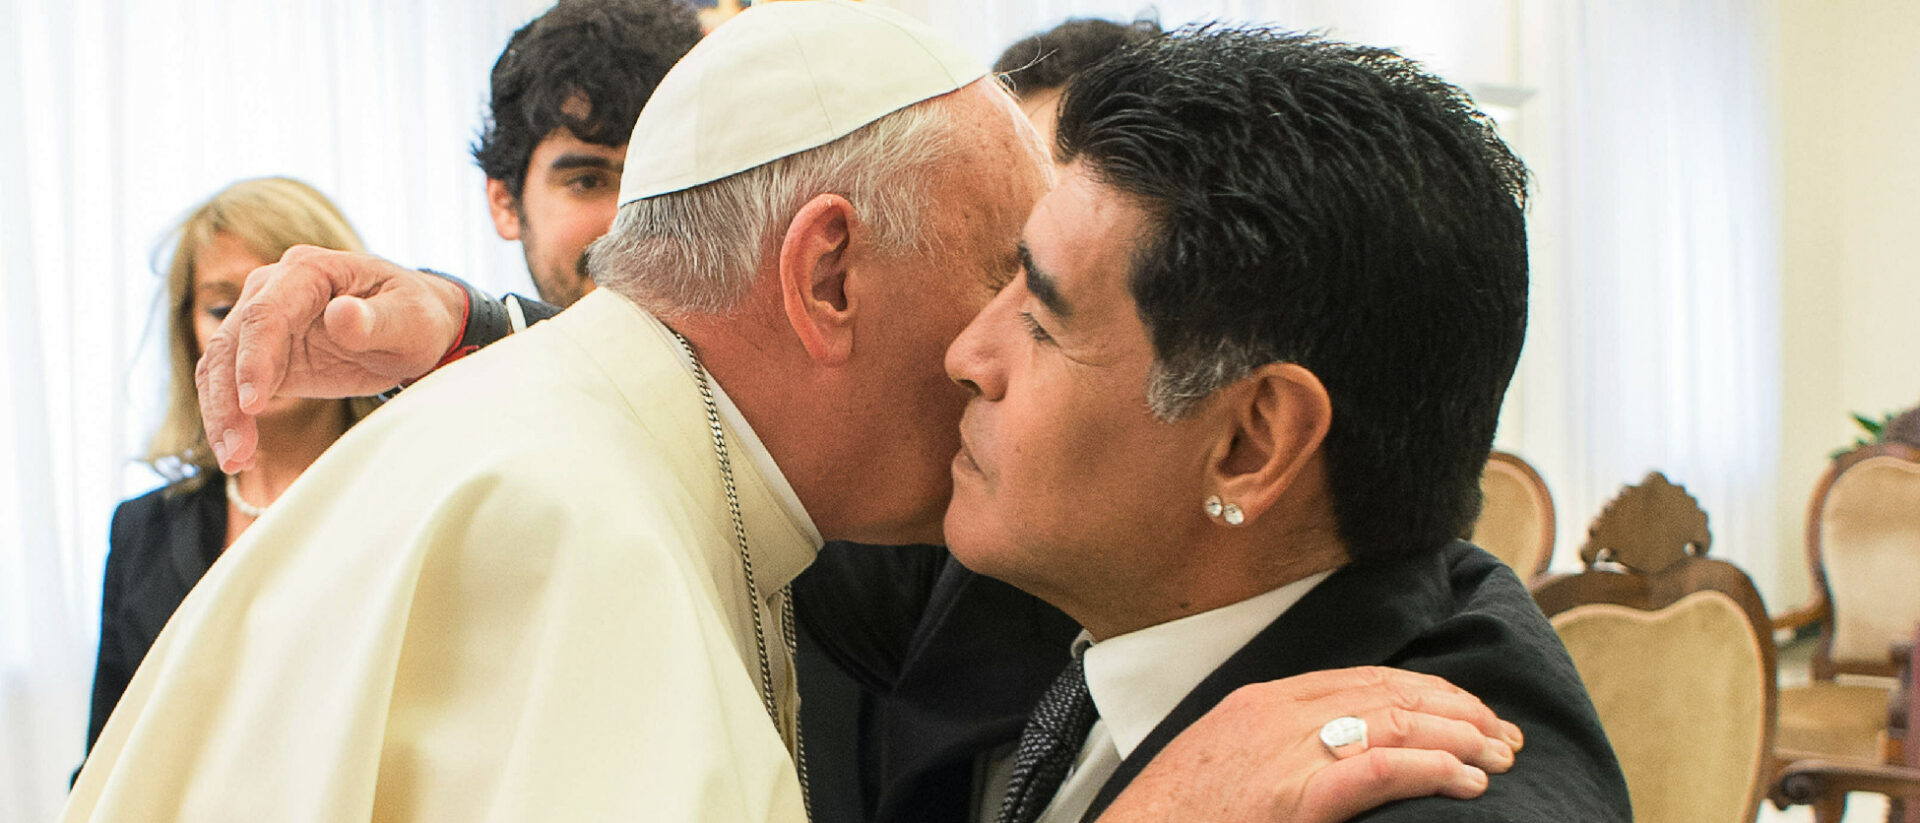 Herzliche Begüssung: Papst Franziskus und der Fussballer Diego Maradona 2014 im Vatikan.